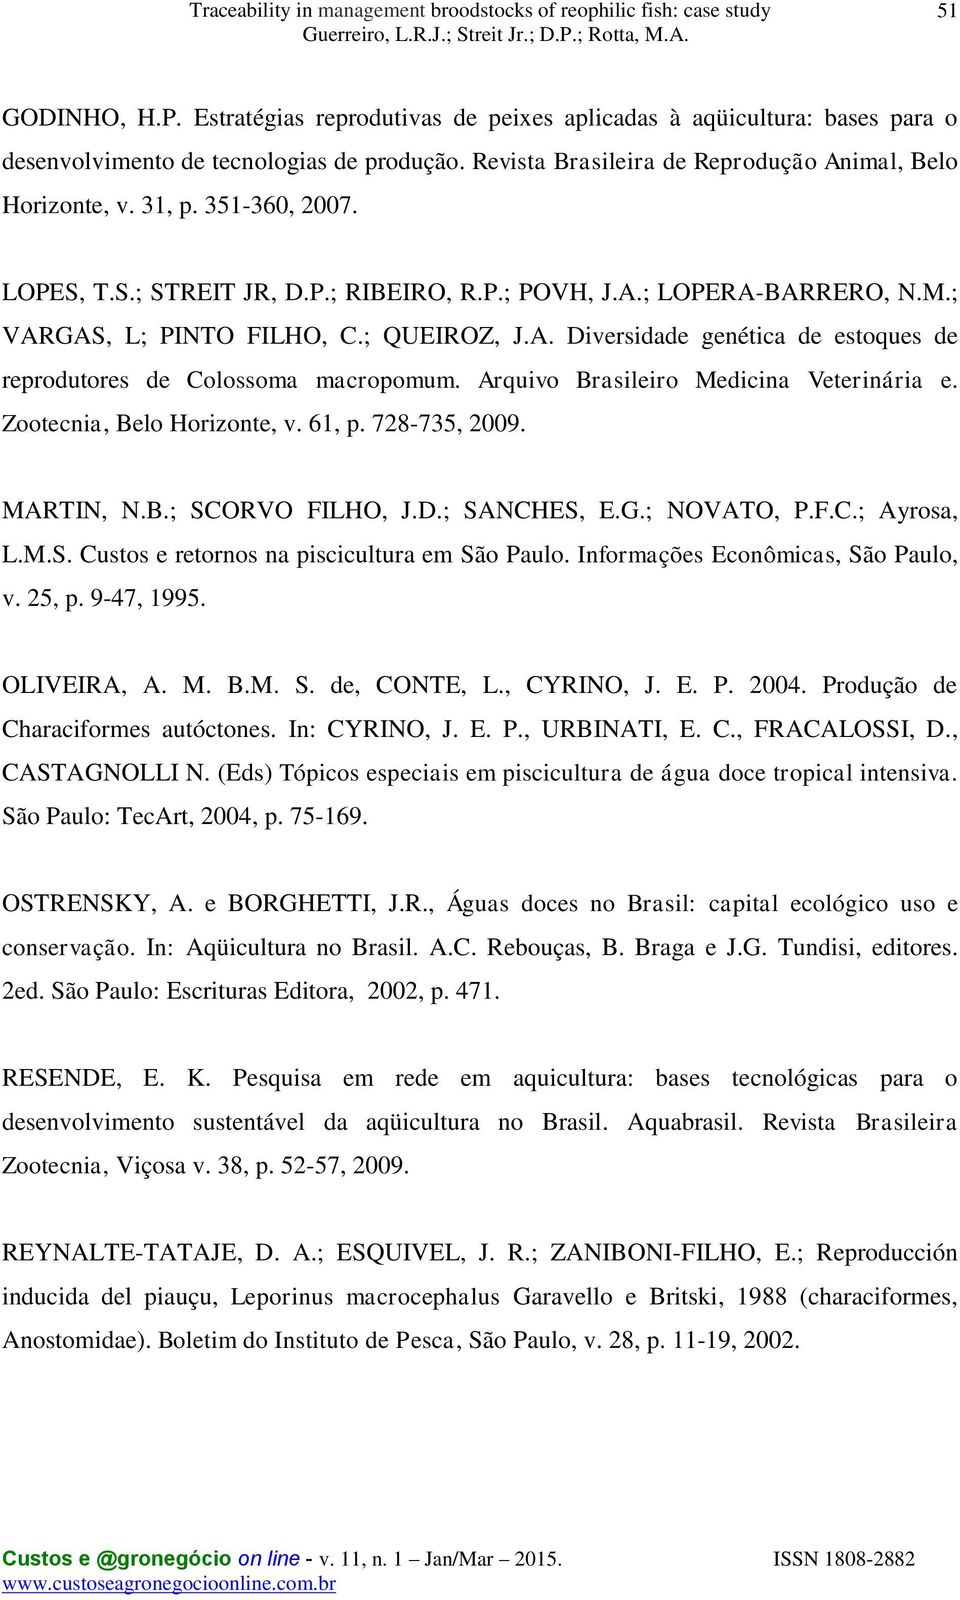 Arquivo Brasileiro Medicina Veterinária e. Zootecnia, Belo Horizonte, v. 61, p. 728-735, 2009. MARTIN, N.B.; SCORVO FILHO, J.D.; SANCHES, E.G.; NOVATO, P.F.C.; Ayrosa, L.M.S. Custos e retornos na piscicultura em São Paulo.